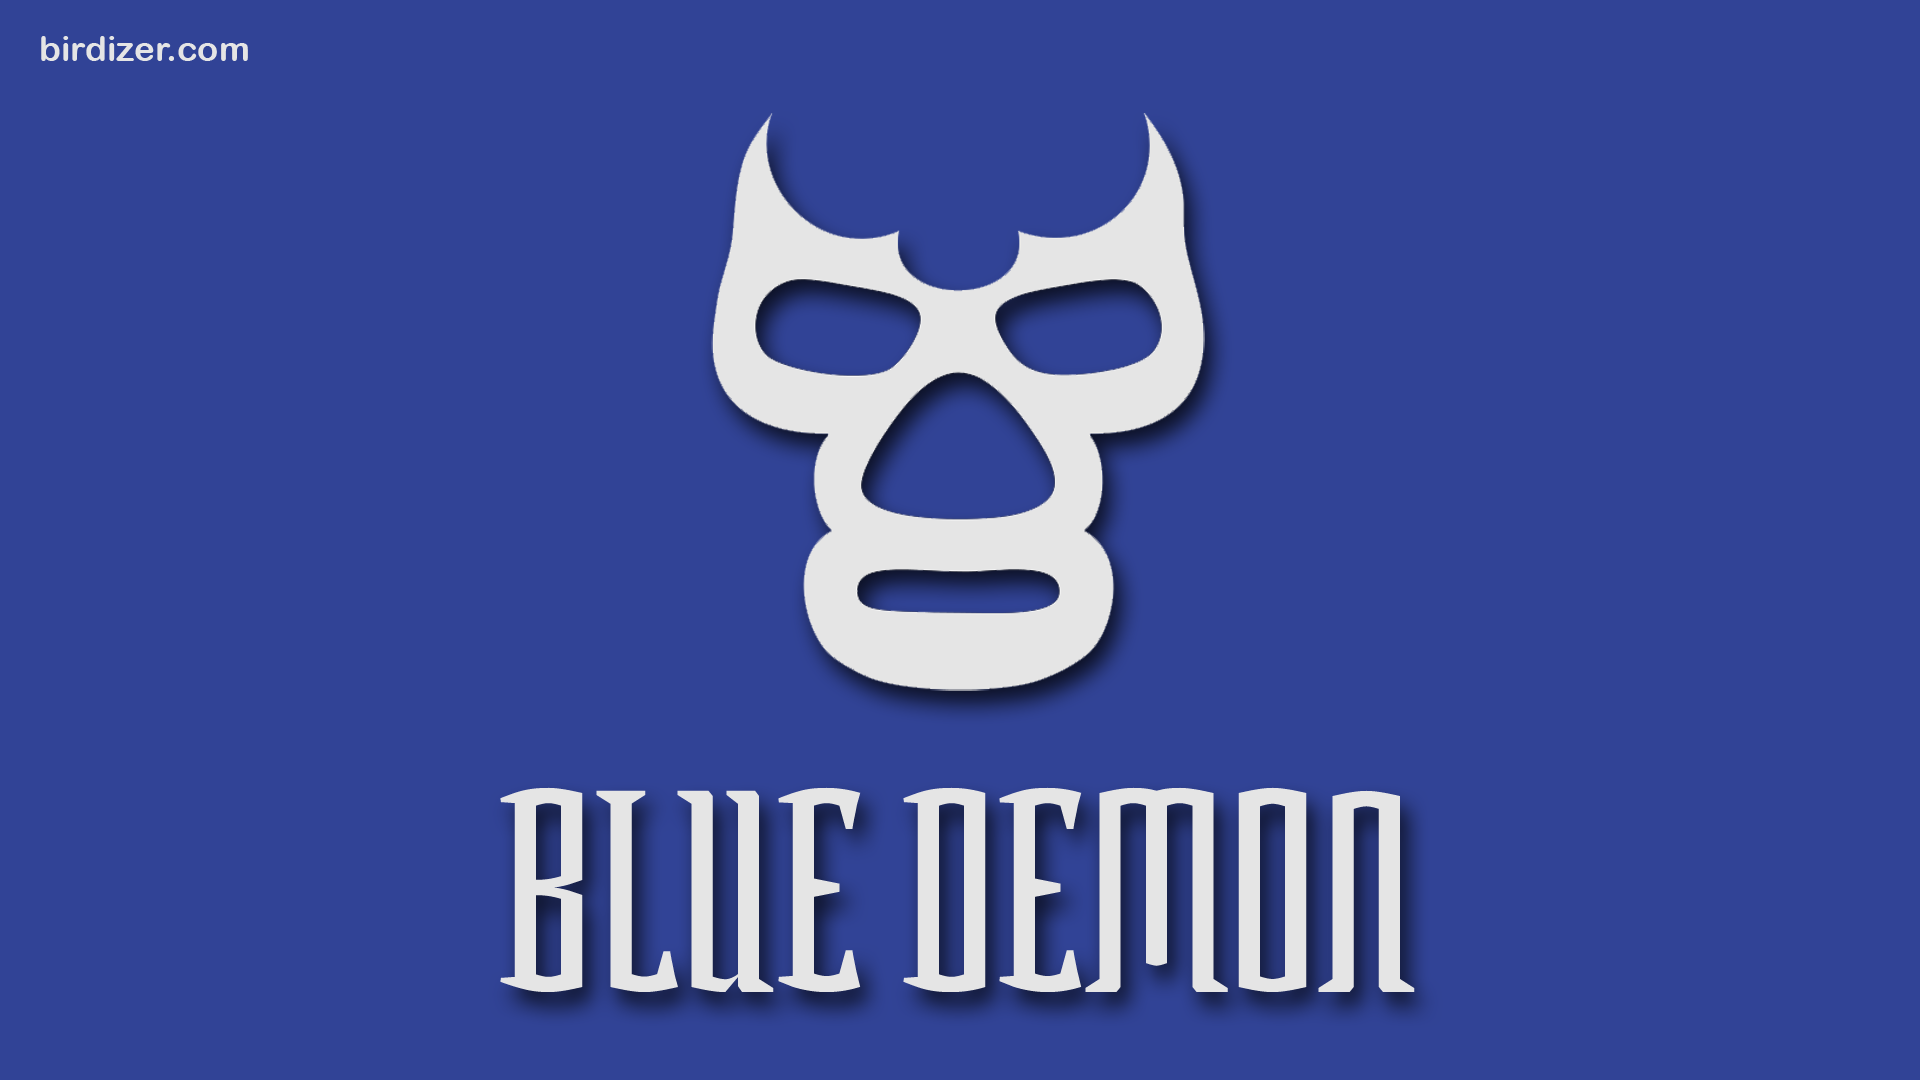 Blue Demon máscara wallpaper. Imagenes de lucha libre, Lucha libre mexicana, Lucha libre